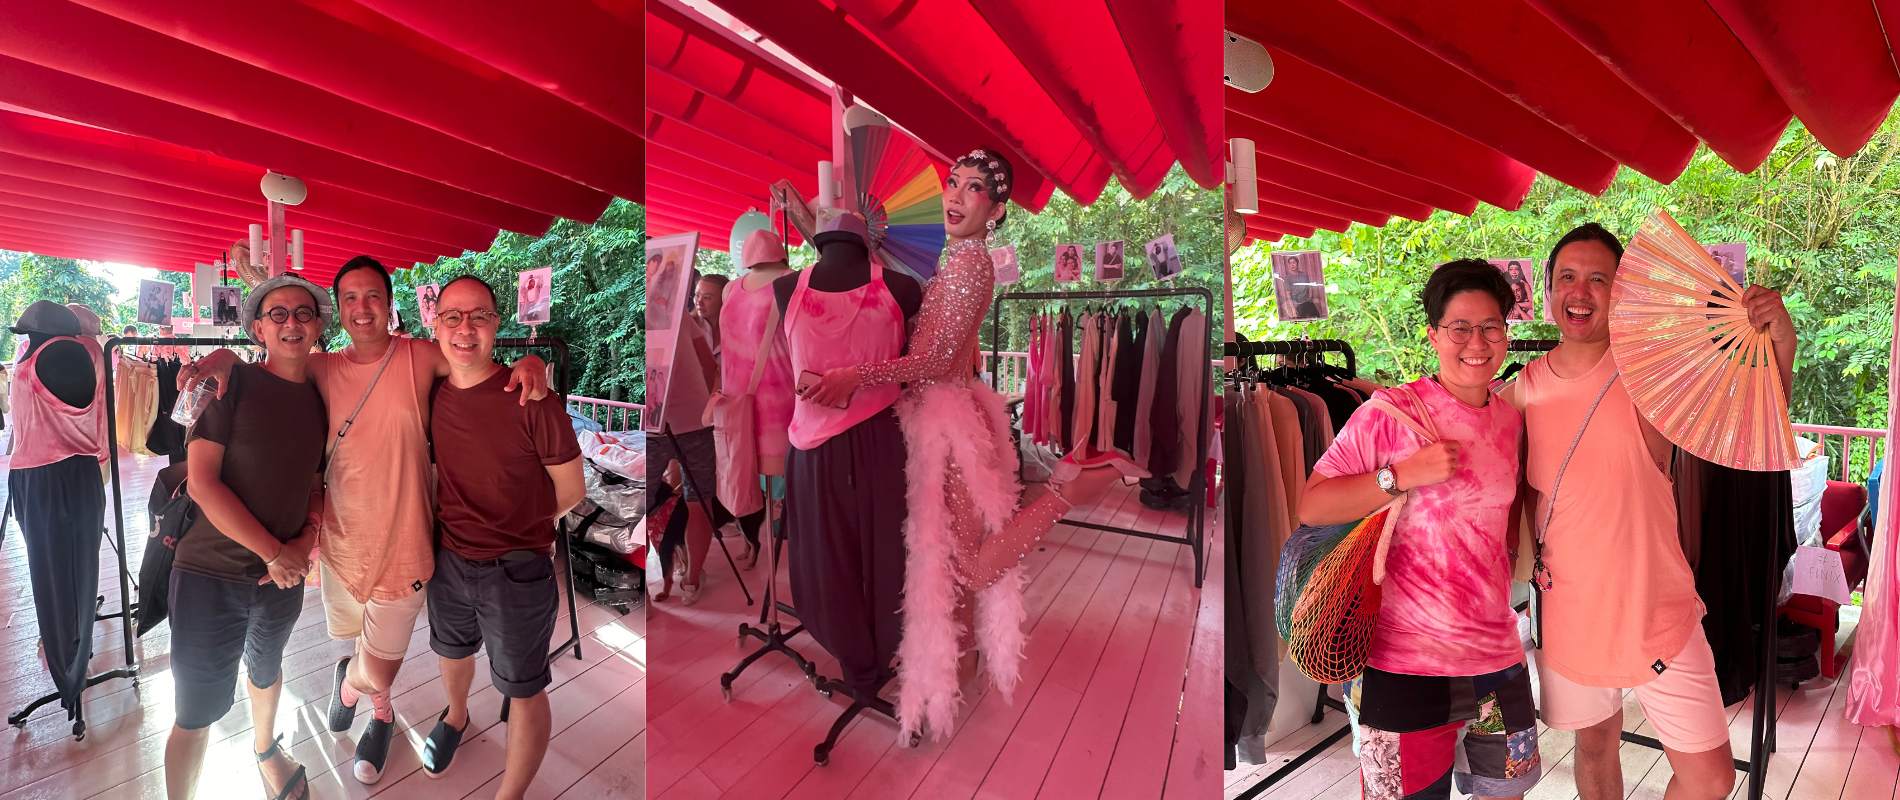 Celebrating Pride and Fashion at Pasar Pink x Sunday Social Market: Fi ...